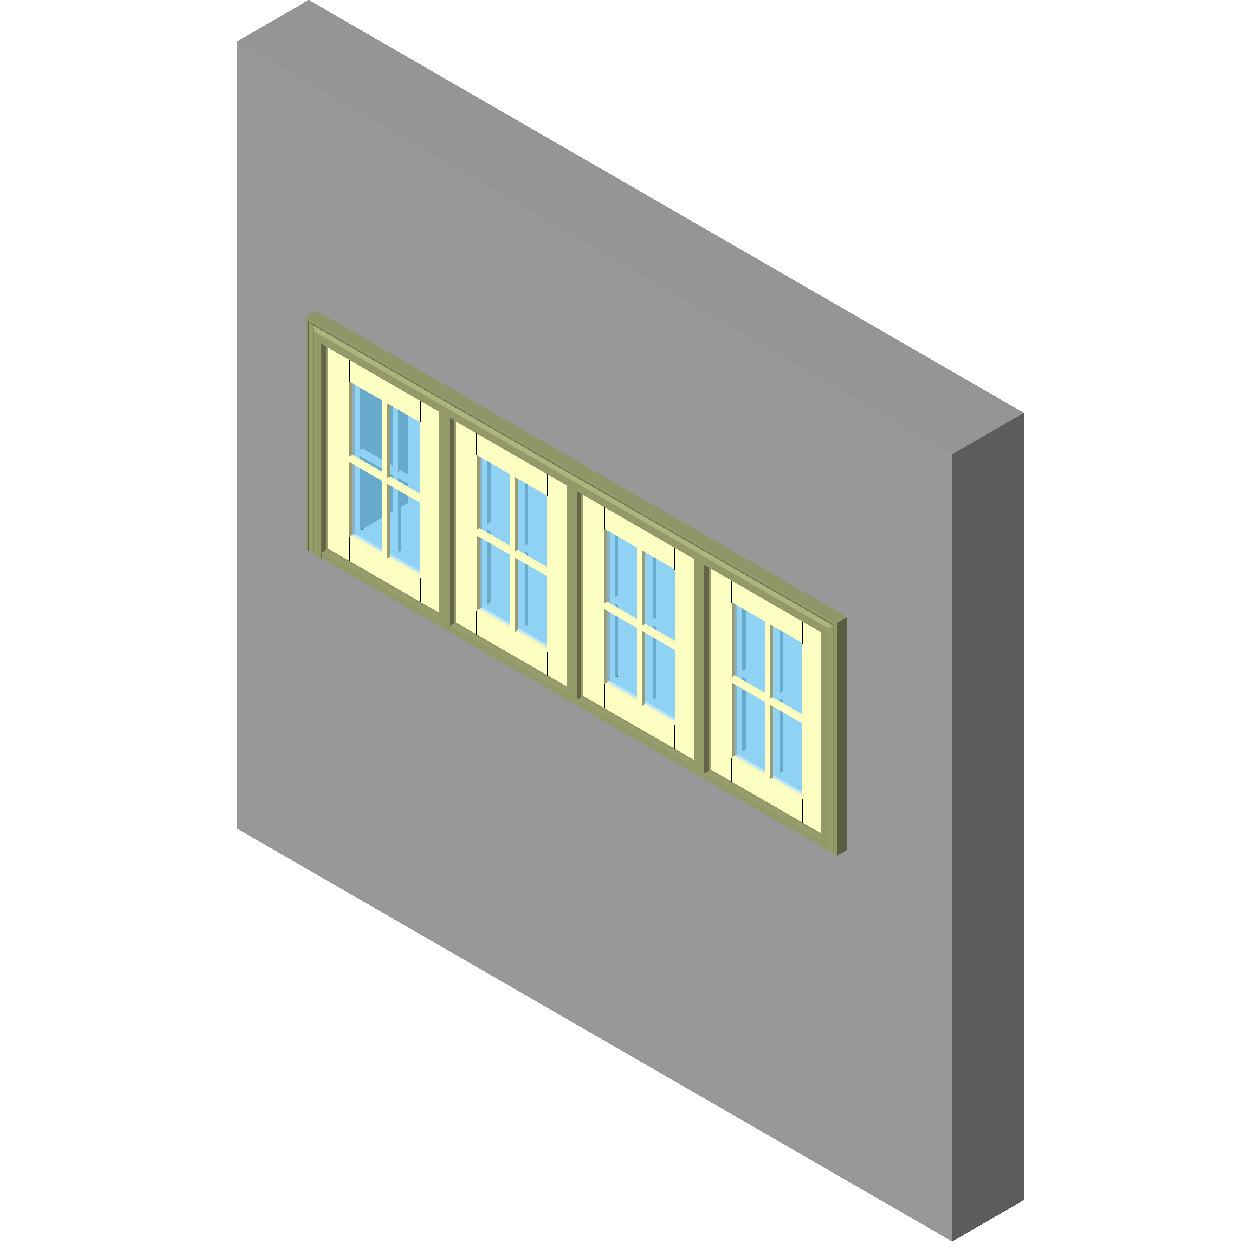 Window_Push-Out_Casement-4-Wide_Kolbe-5Ft 4In W x 5Ft 6In H (KUS456)